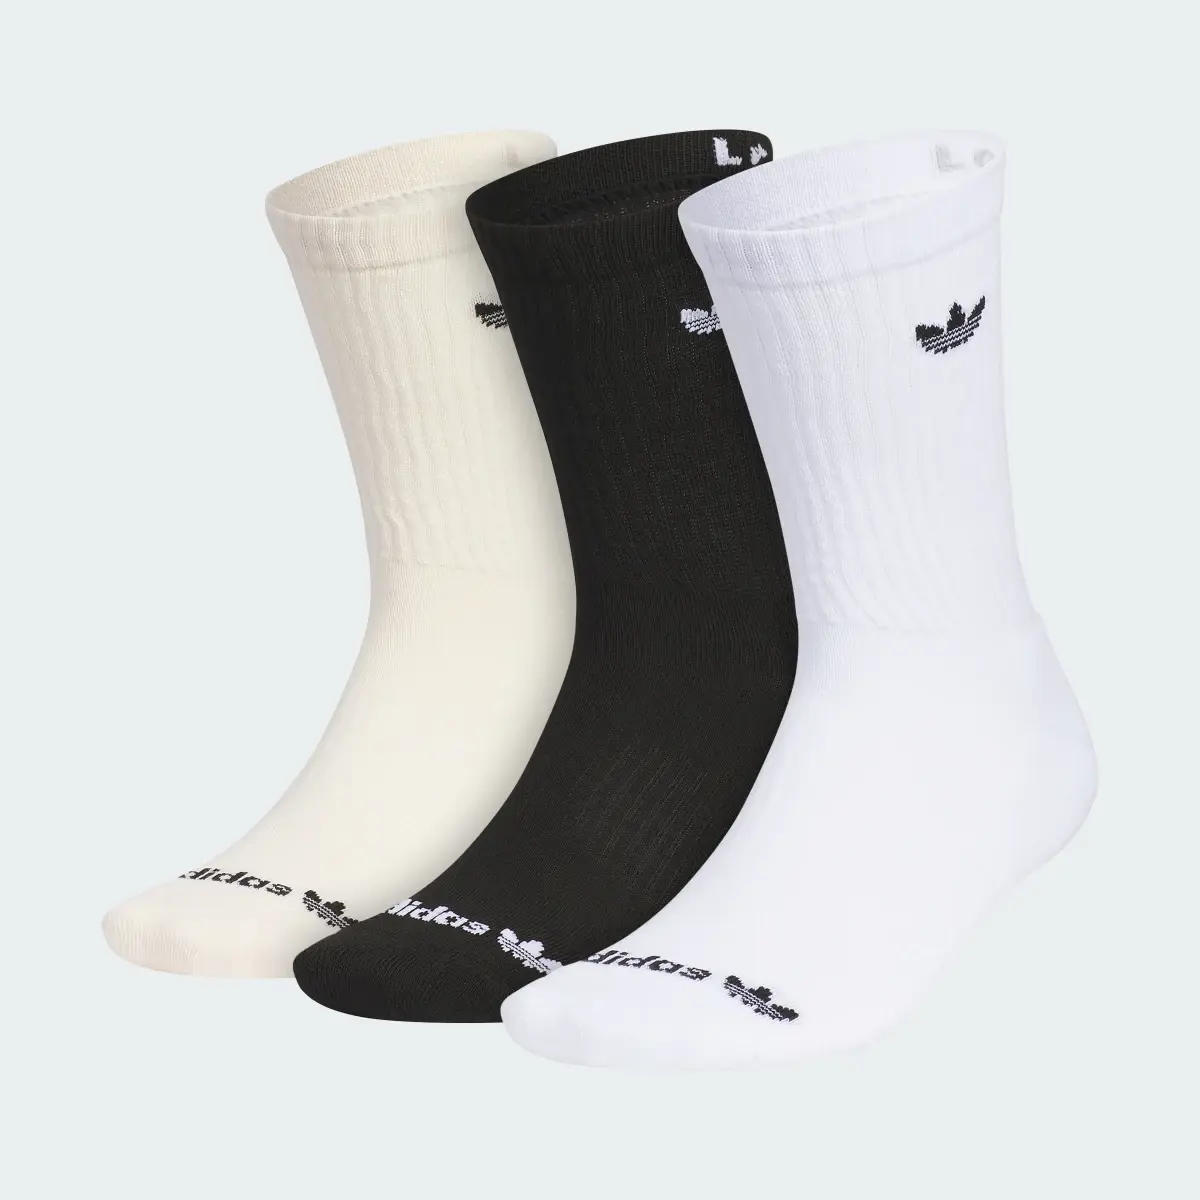 Adidas Originals Trefoil 2.0 3-Pack Crew Socks. 2